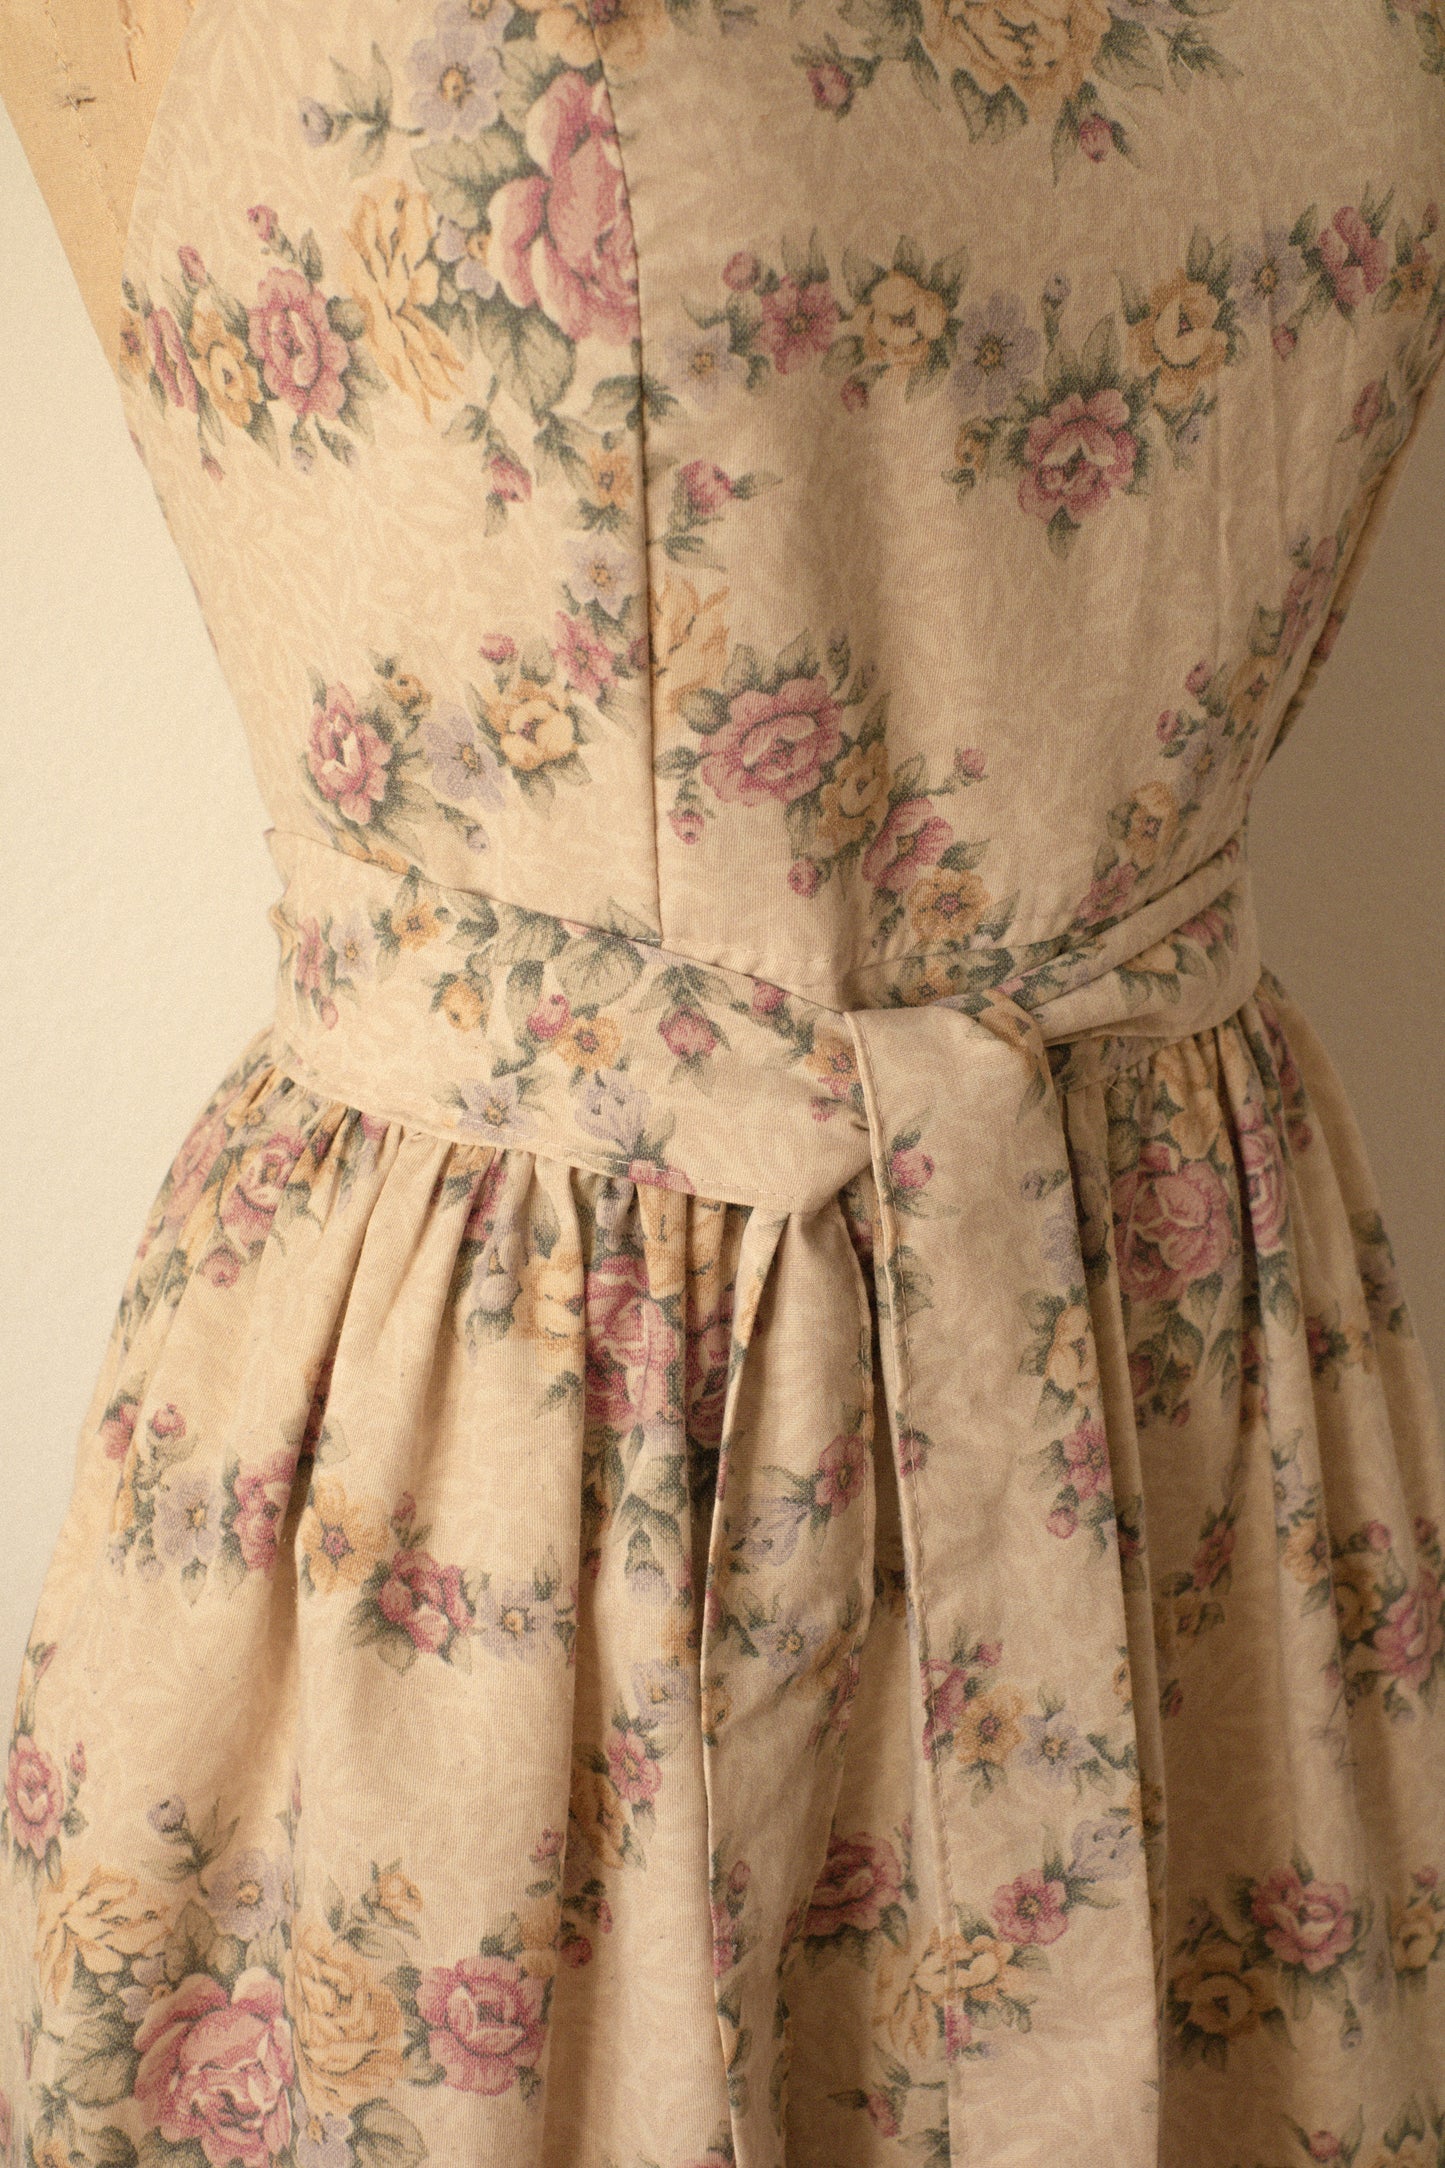 Handmade vintage floral apron - Old love